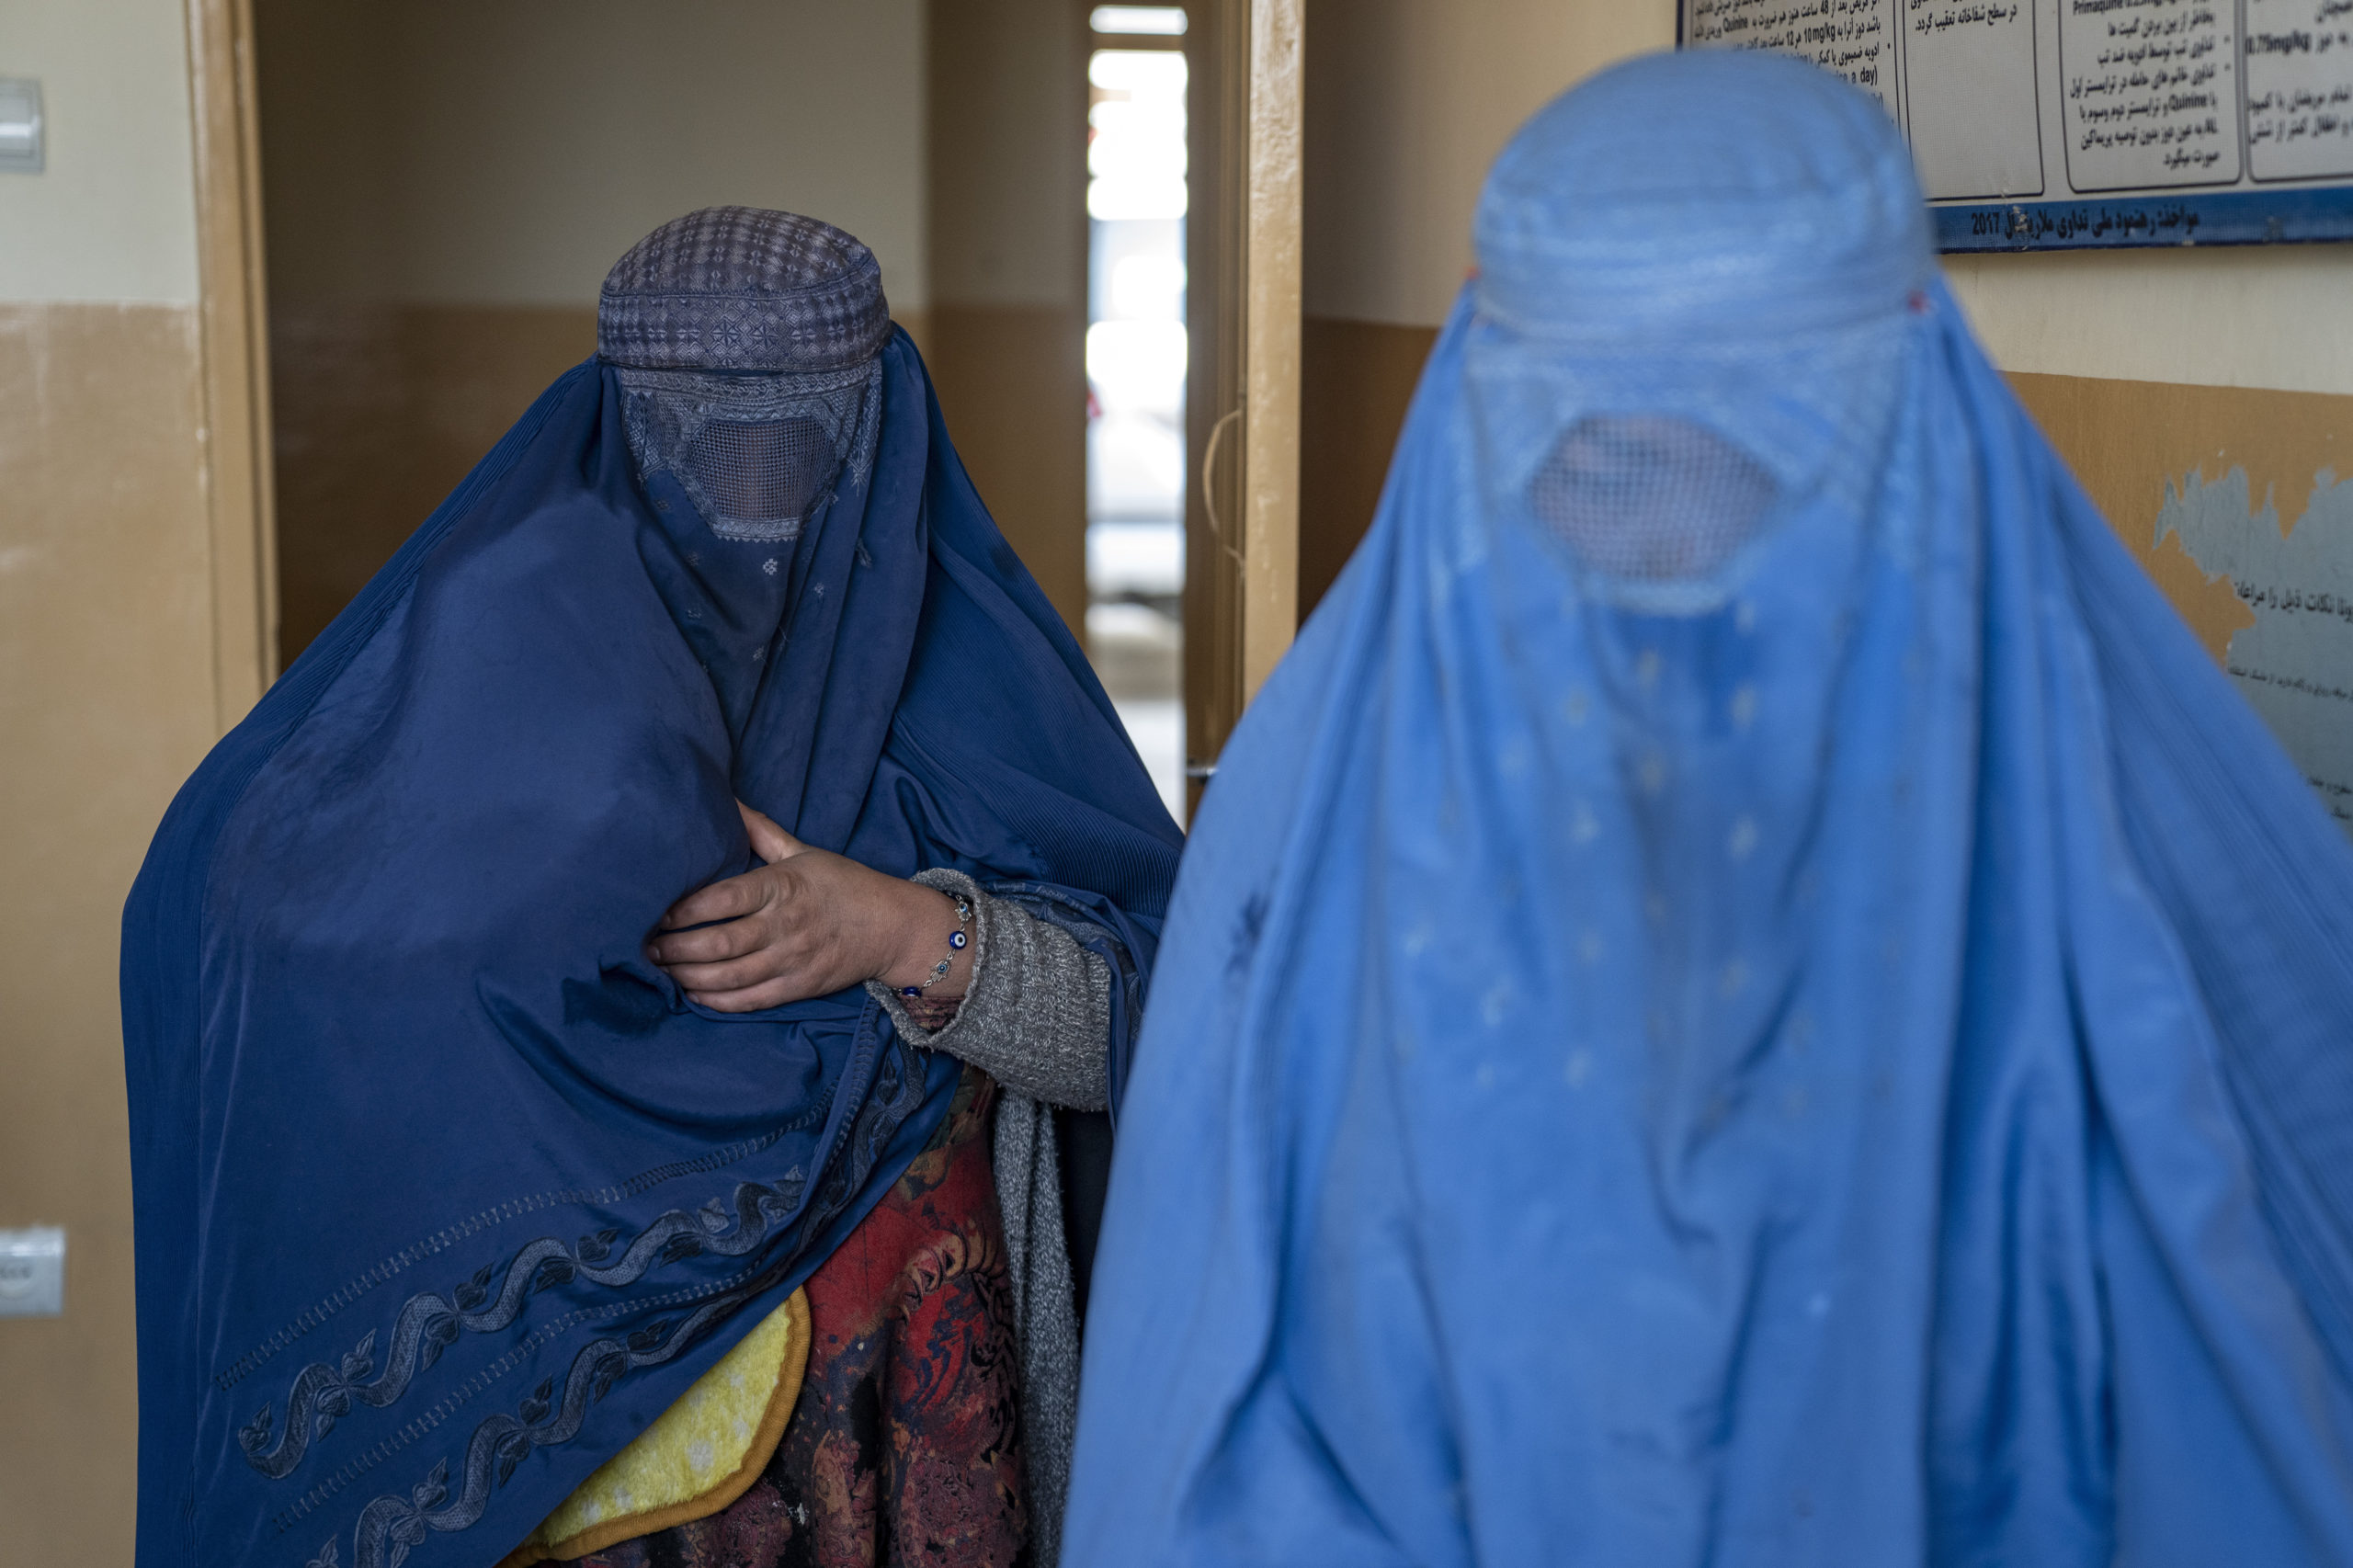 ΕΕ – Οργανισμός για το Άσυλο: Υπό τον κίνδυνο διωγμού όλες οι γυναίκες στο Αφγανιστάν